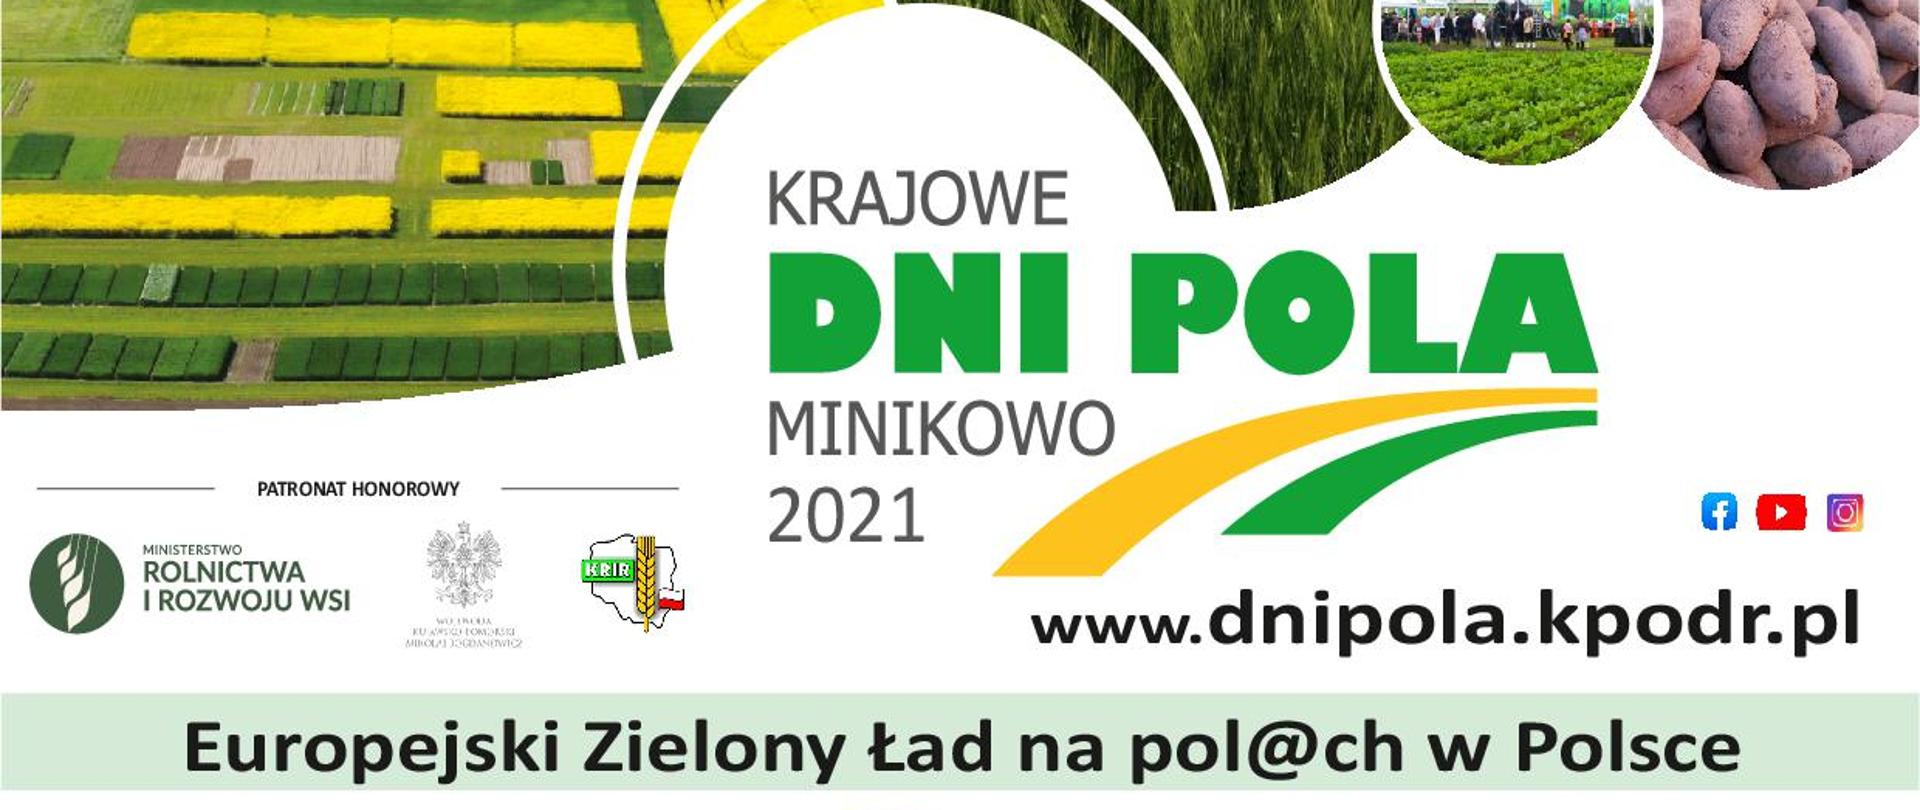 Kujawsko-Pomorski Ośrodek Doradztwa Rolniczego w Minikowie zaprasza na Krajowe Dni Pola Minikowo 2021, które odbędą się w dniach 19-20 czerwca br.
